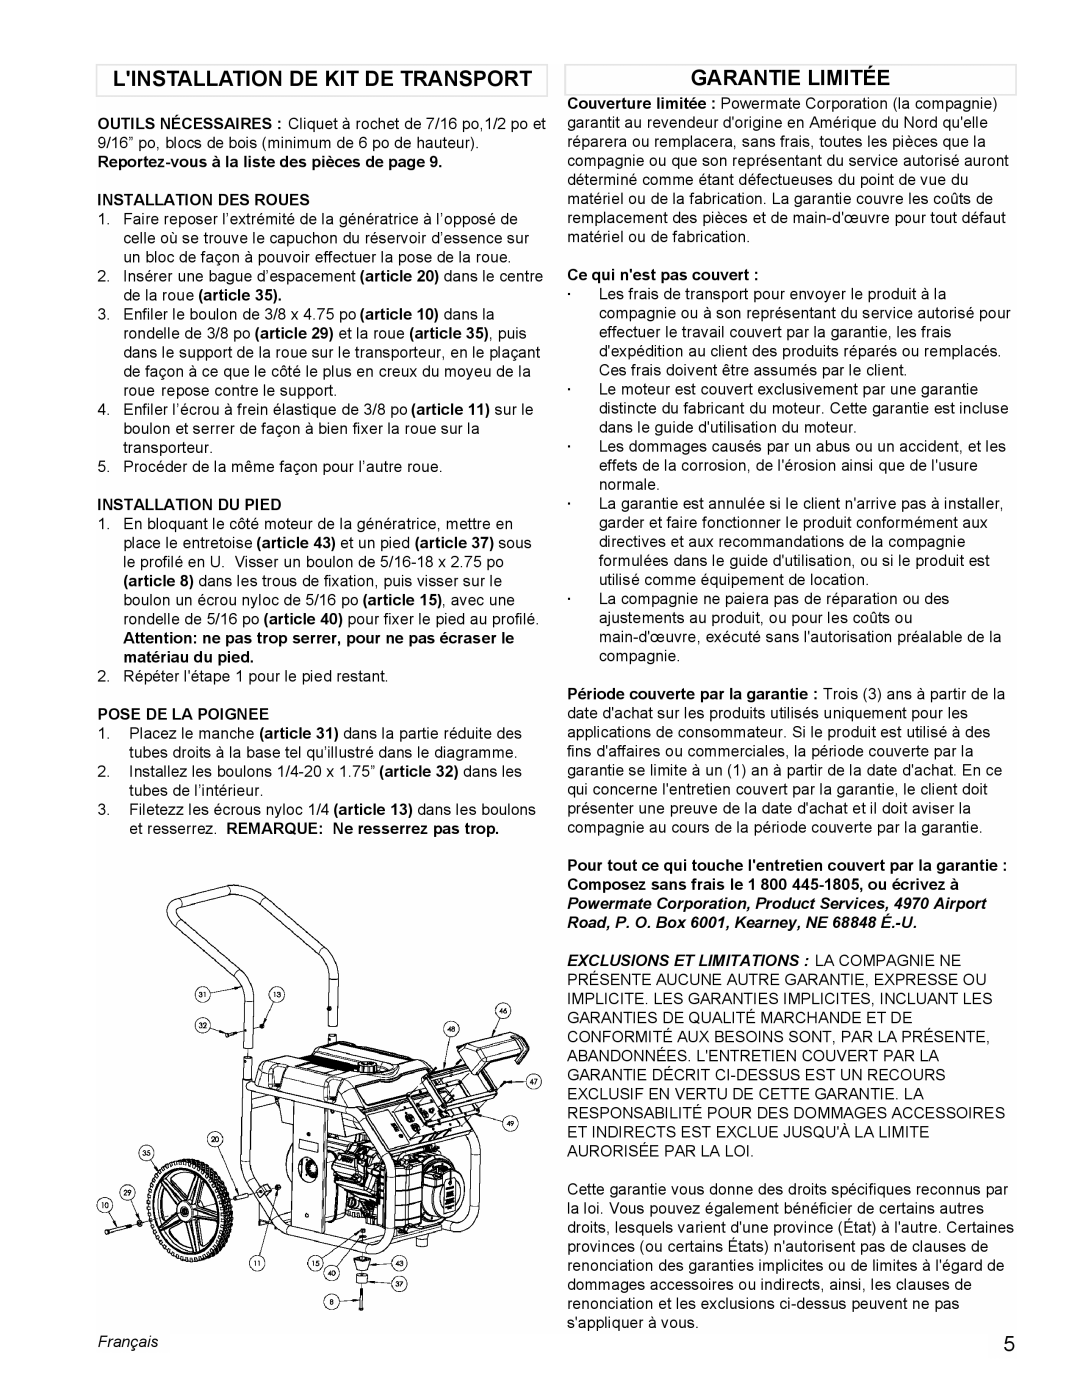 Powermate PM0675700 manual Linstallation De Kit De Transport, Garantie Limitée, Reportez-vousà la liste des pièces de page 